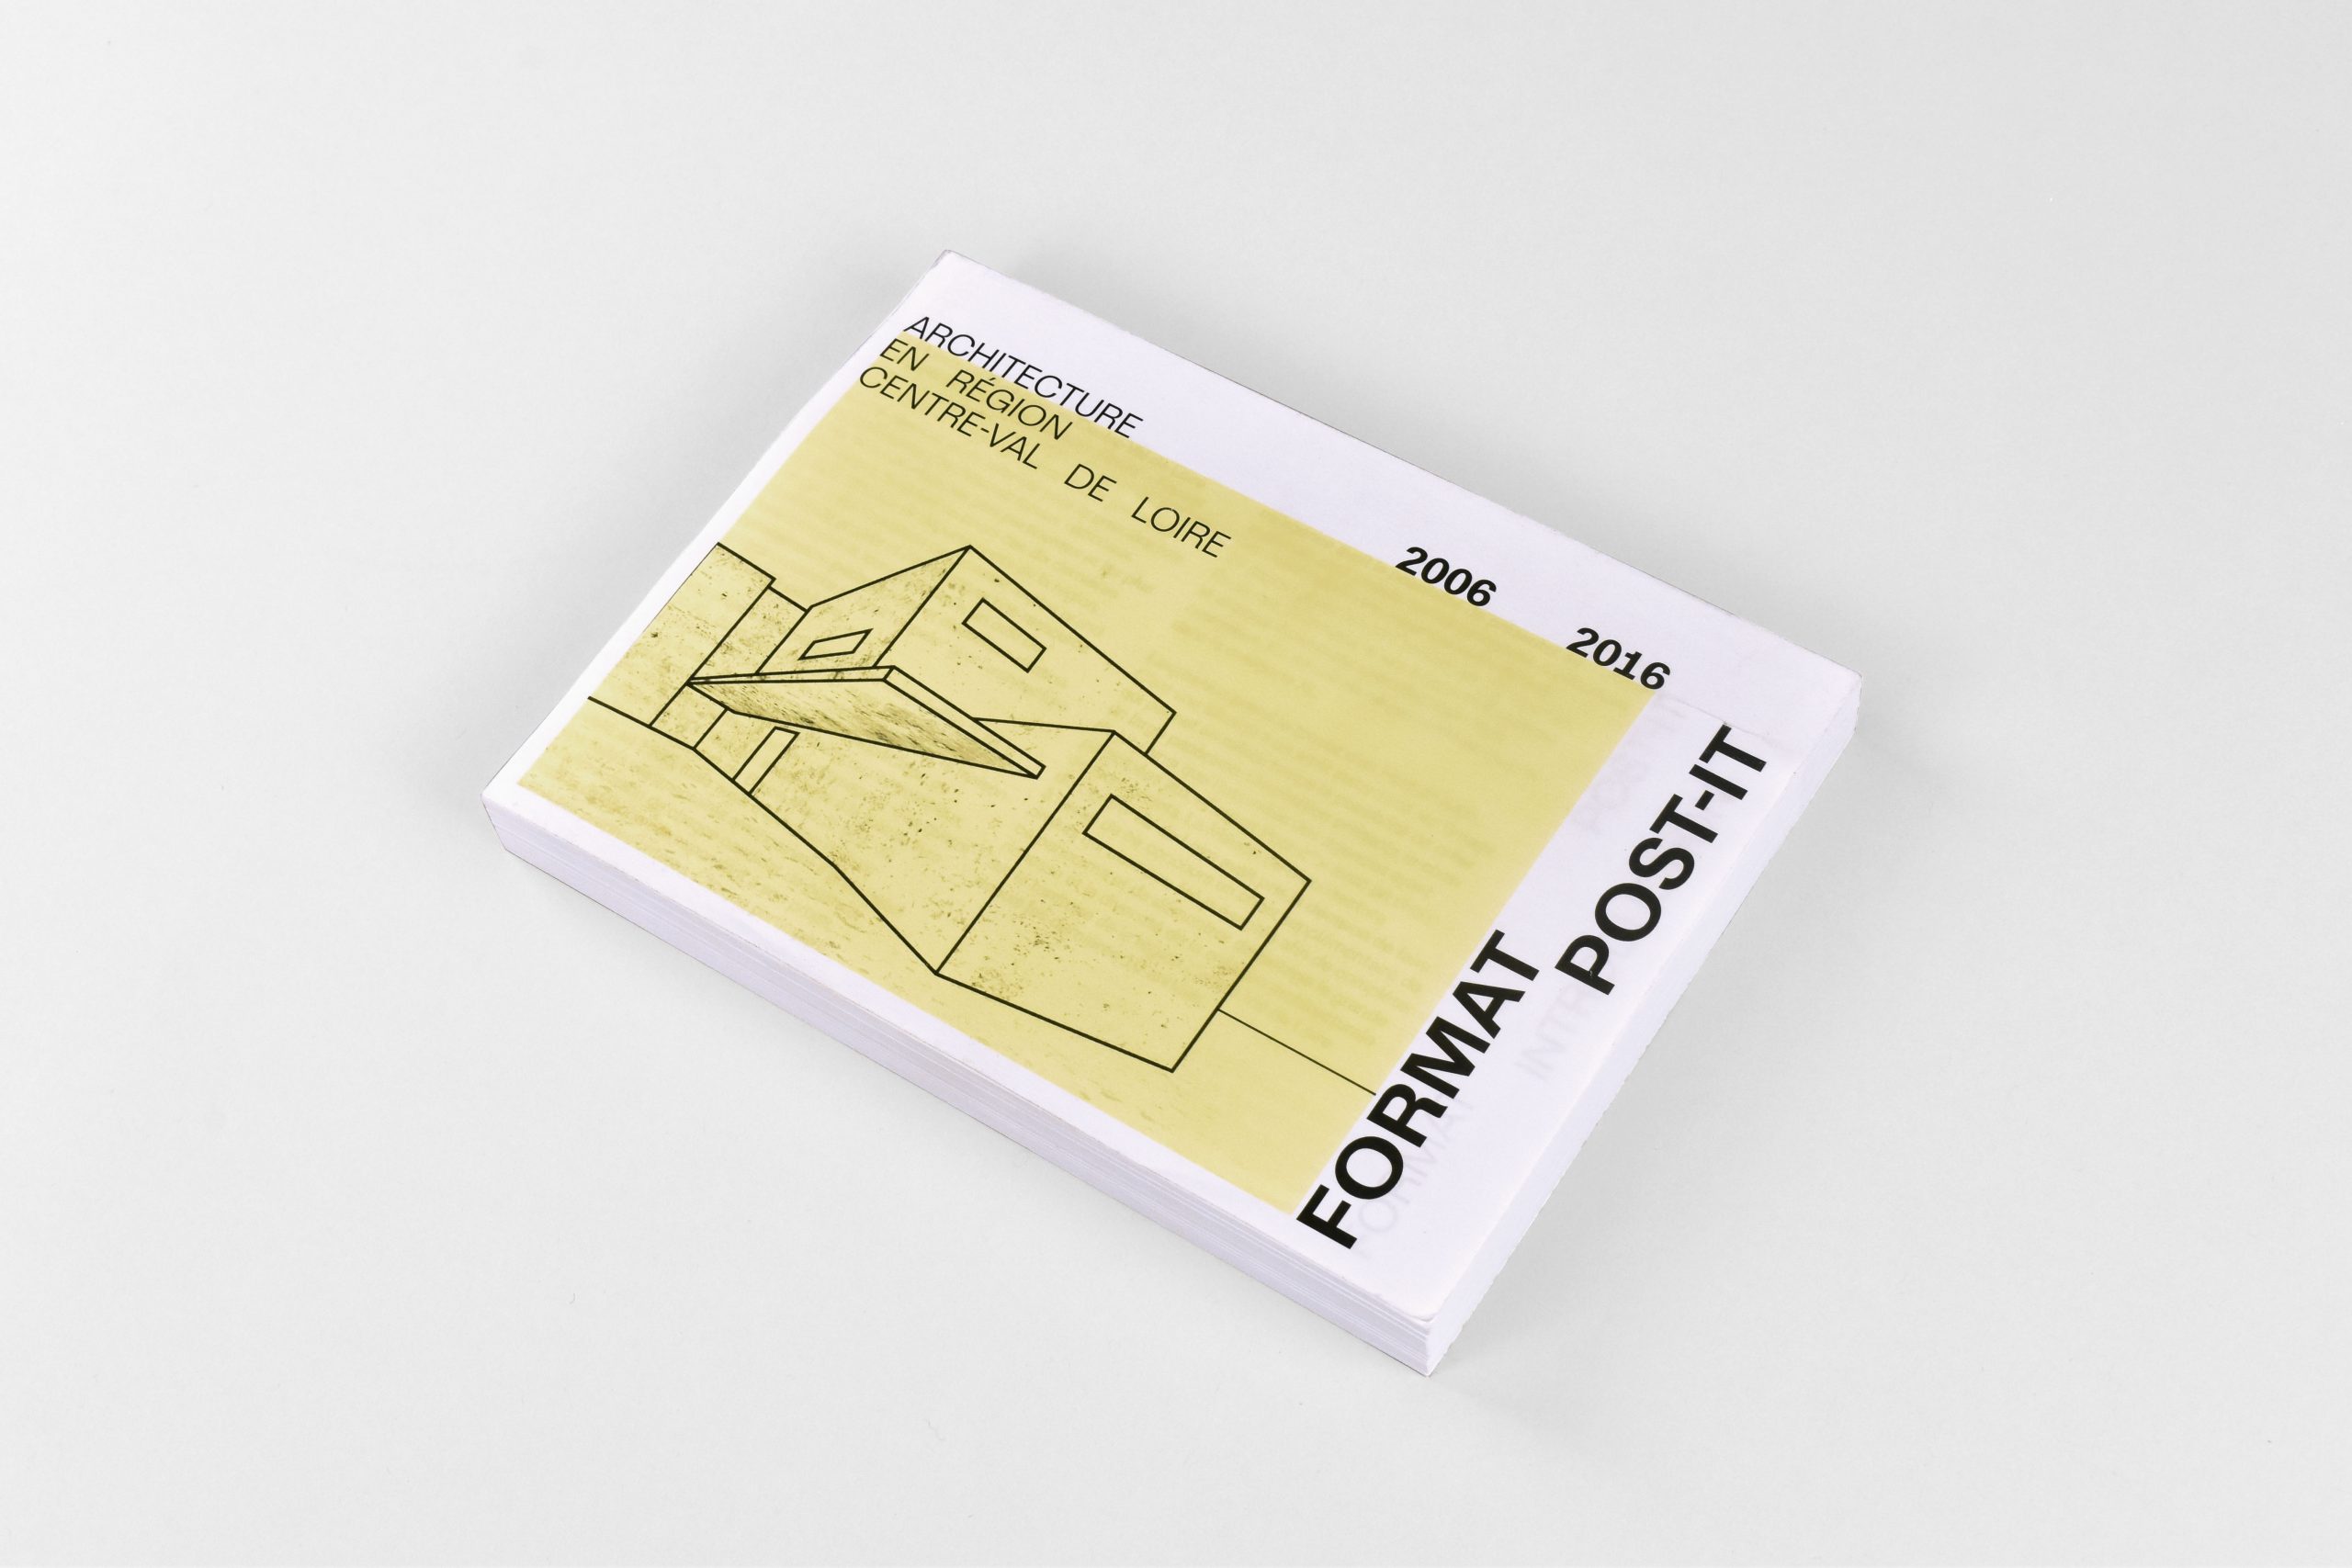 Format post-it by Maison de l'architecture Centre-Val de Loire designed by ©Adrien Jacquemet graphic designer